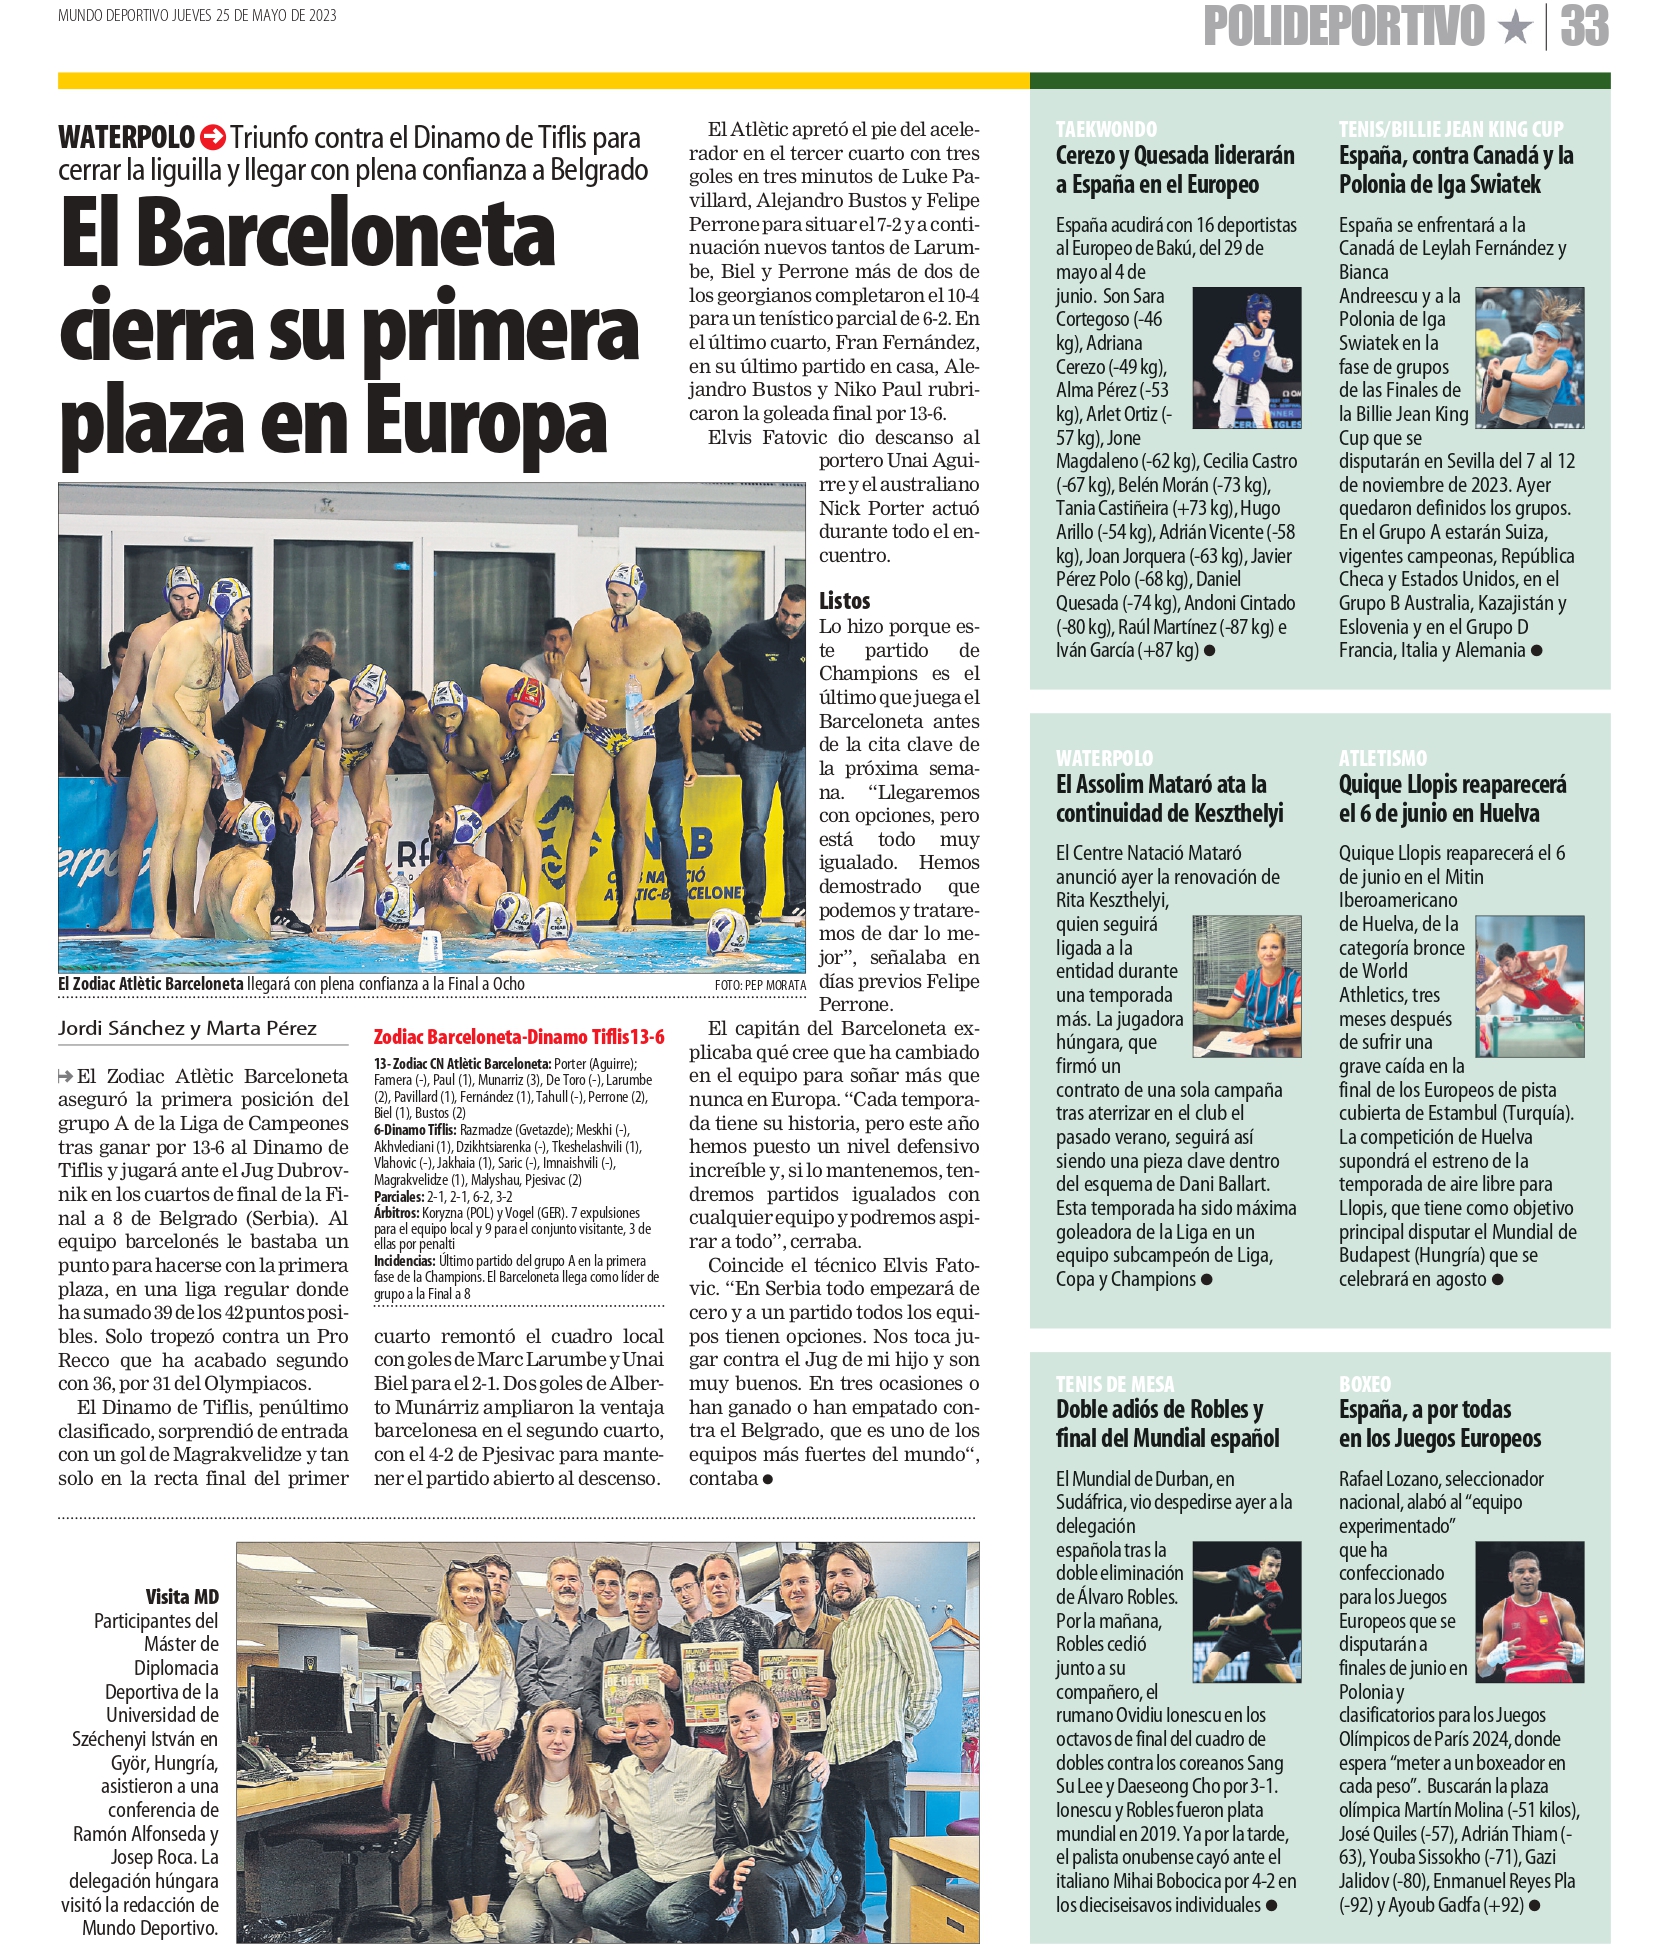 sportdiplomacia_barcelona (4).jpg